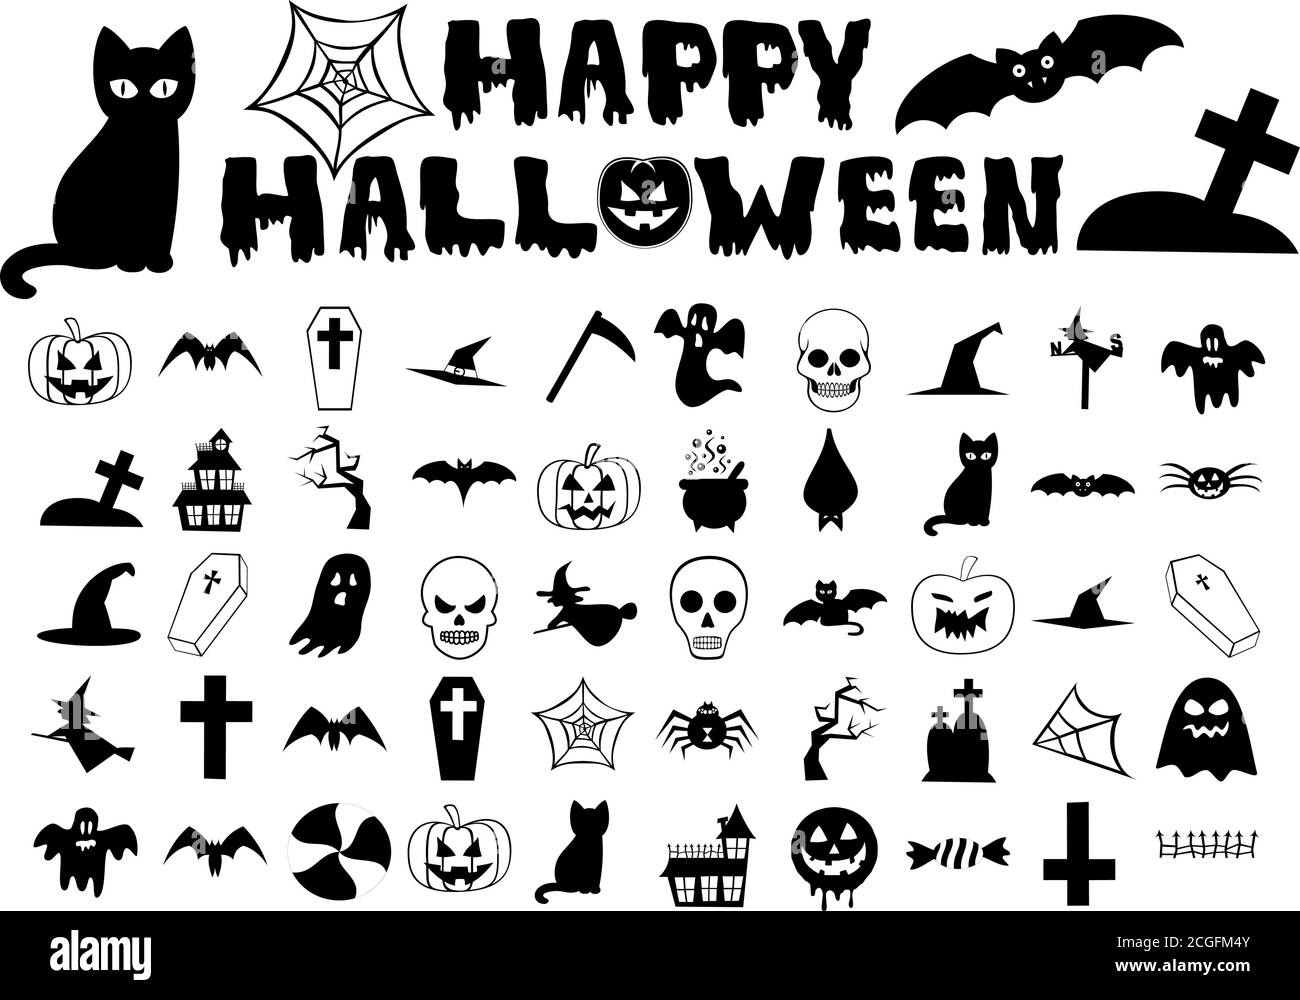 Trucco o trattare le icone nere insieme - Halloween Illustrazione Vettoriale